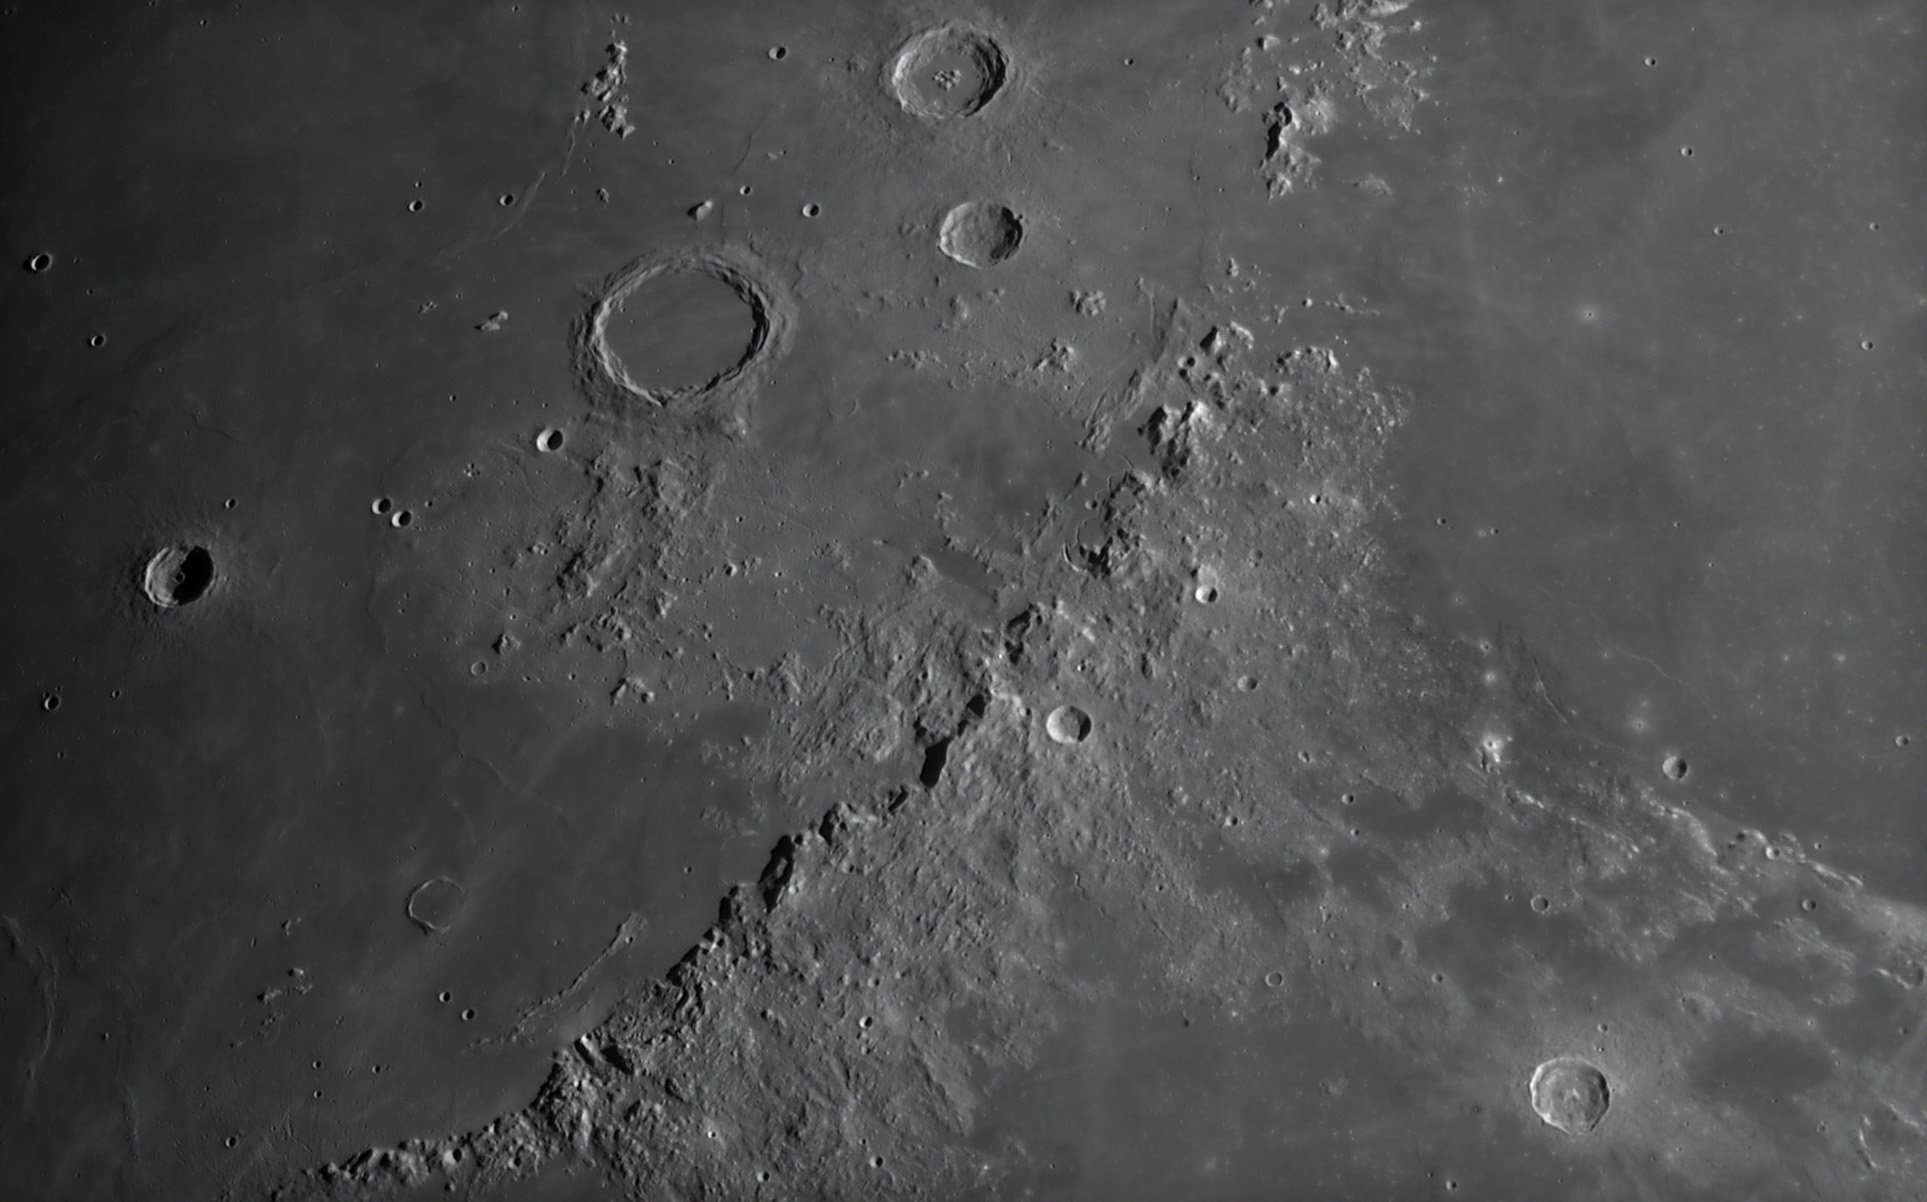 Mond - Montes Apenninus mit Rima Hadley   